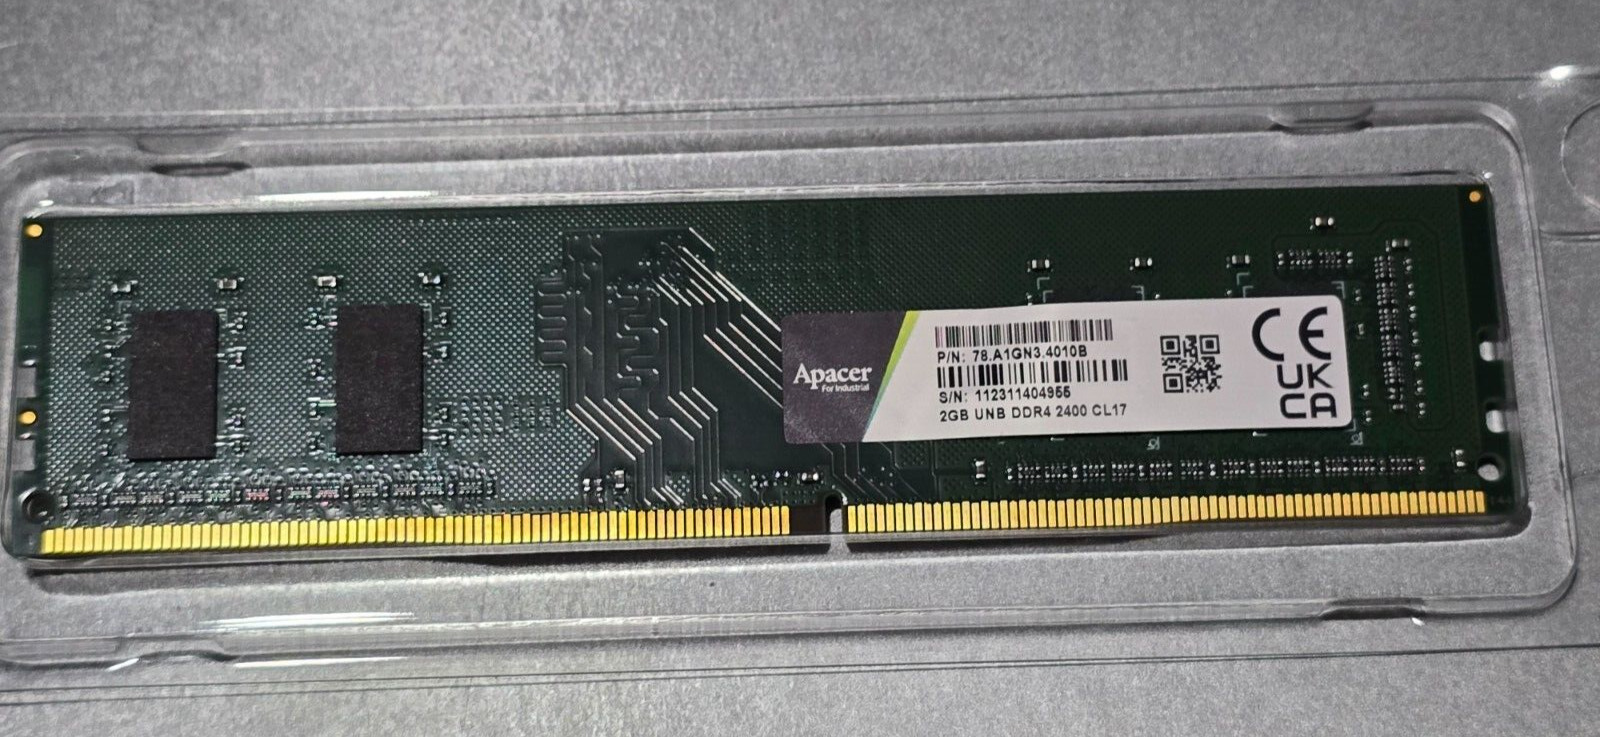 APACER Industrial DDR4-2400 CL17 2GB UDIMM (78.A1GNL.4010B)